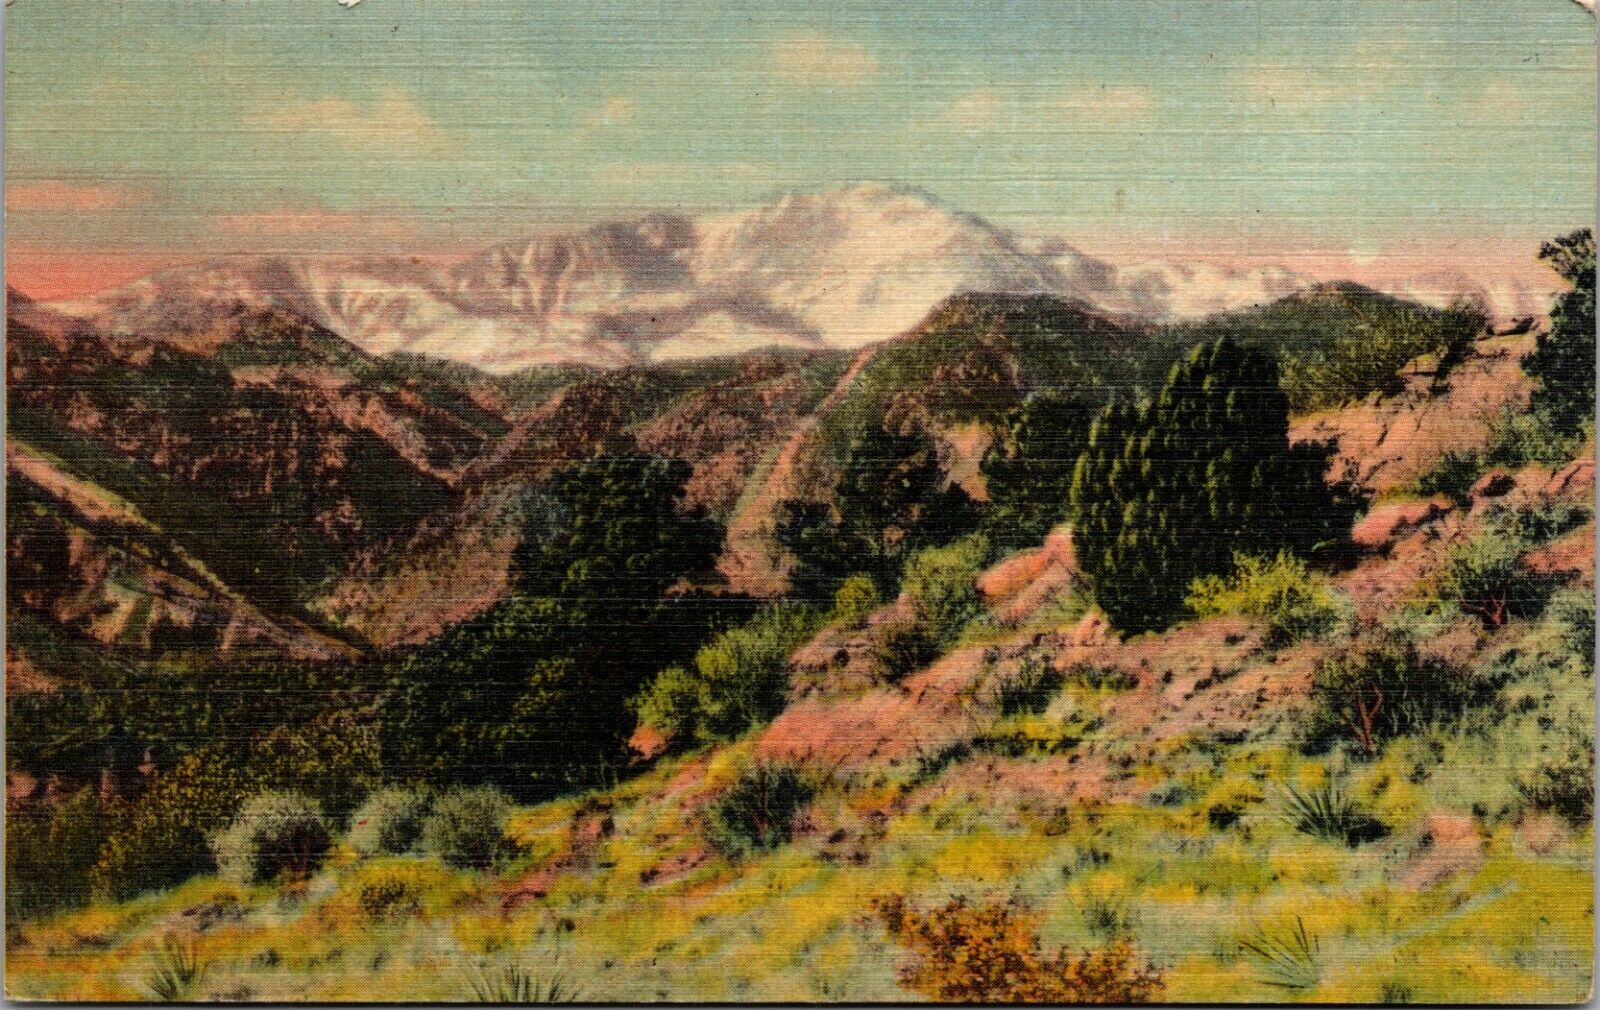 Cascade, CO Colorado, Pikes Peak Alt. 14,109 FT Vintage Linen Postcard 